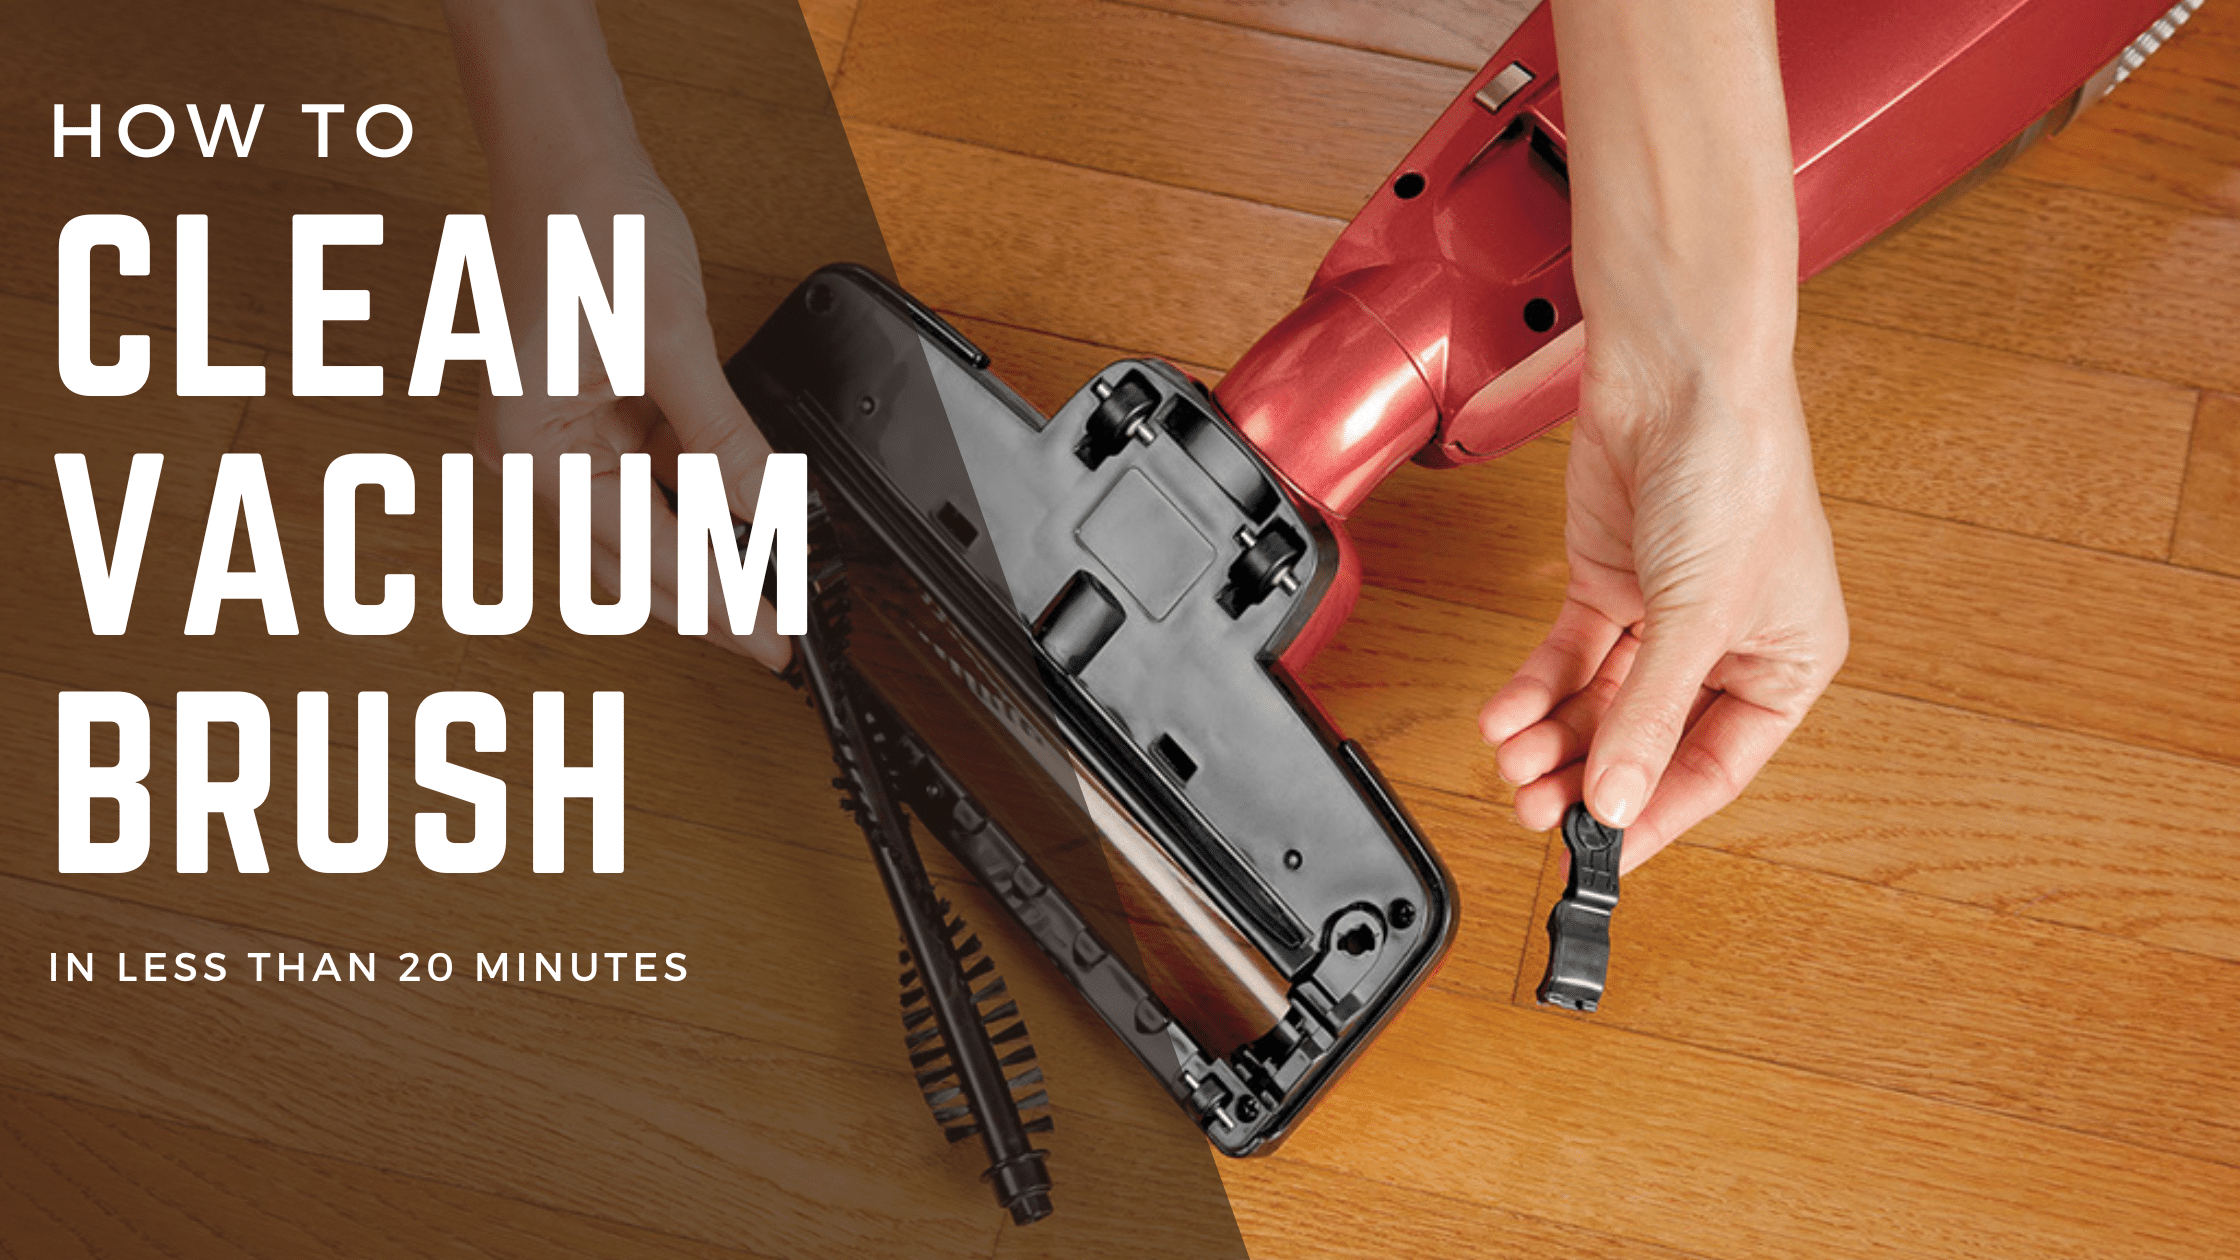 How to Clean Vacuum Brush